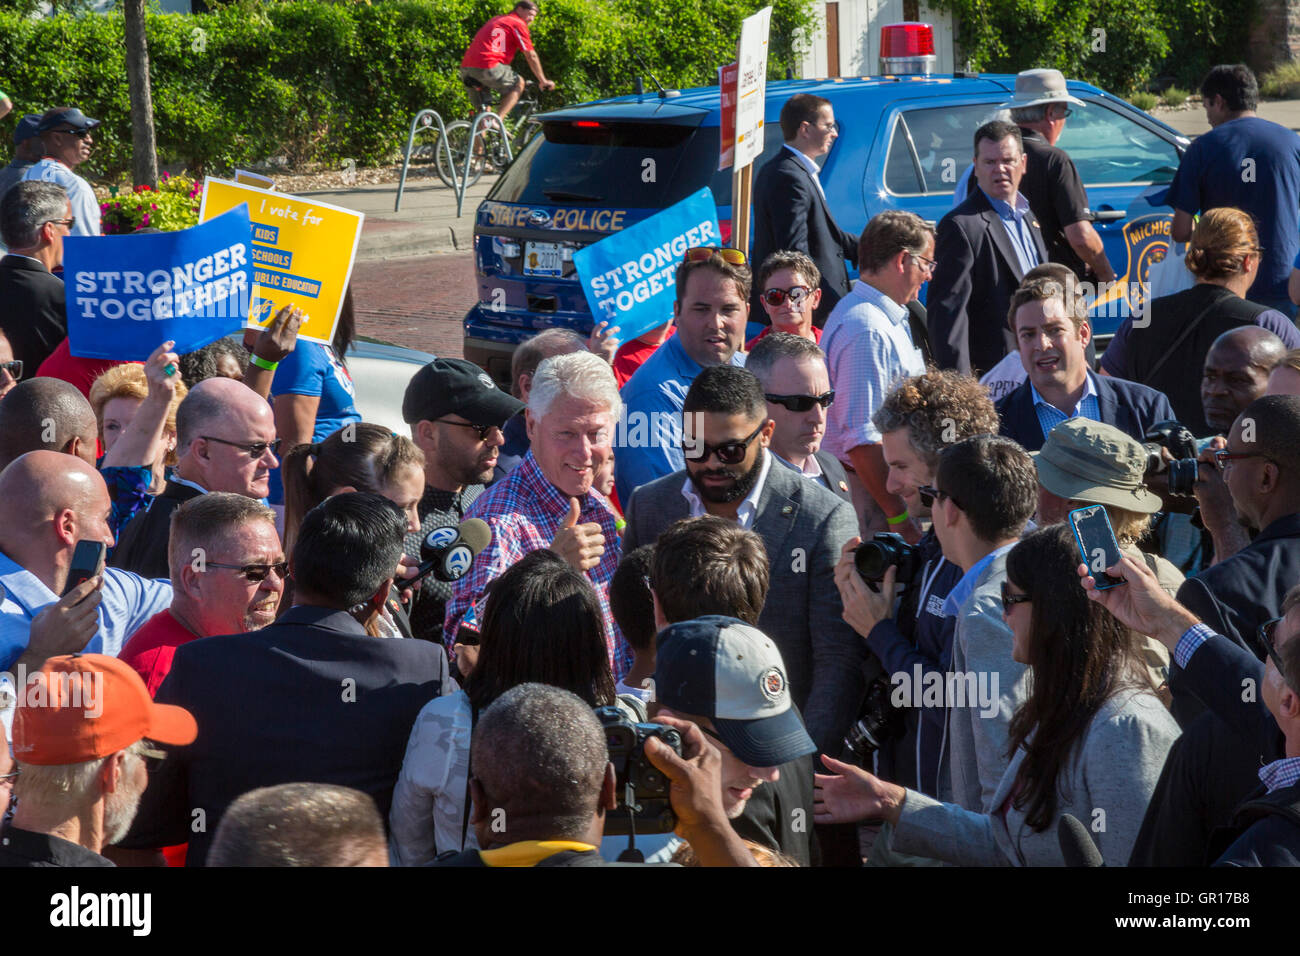 Detroit, Michigan, Stati Uniti d'America. 05 Sep, 2016. L'ex Presidente Bill Clinton marche a Detroit la parata del giorno del lavoro, campagne per la moglie Hillary. Credito: Jim West/Alamy Live News Foto Stock